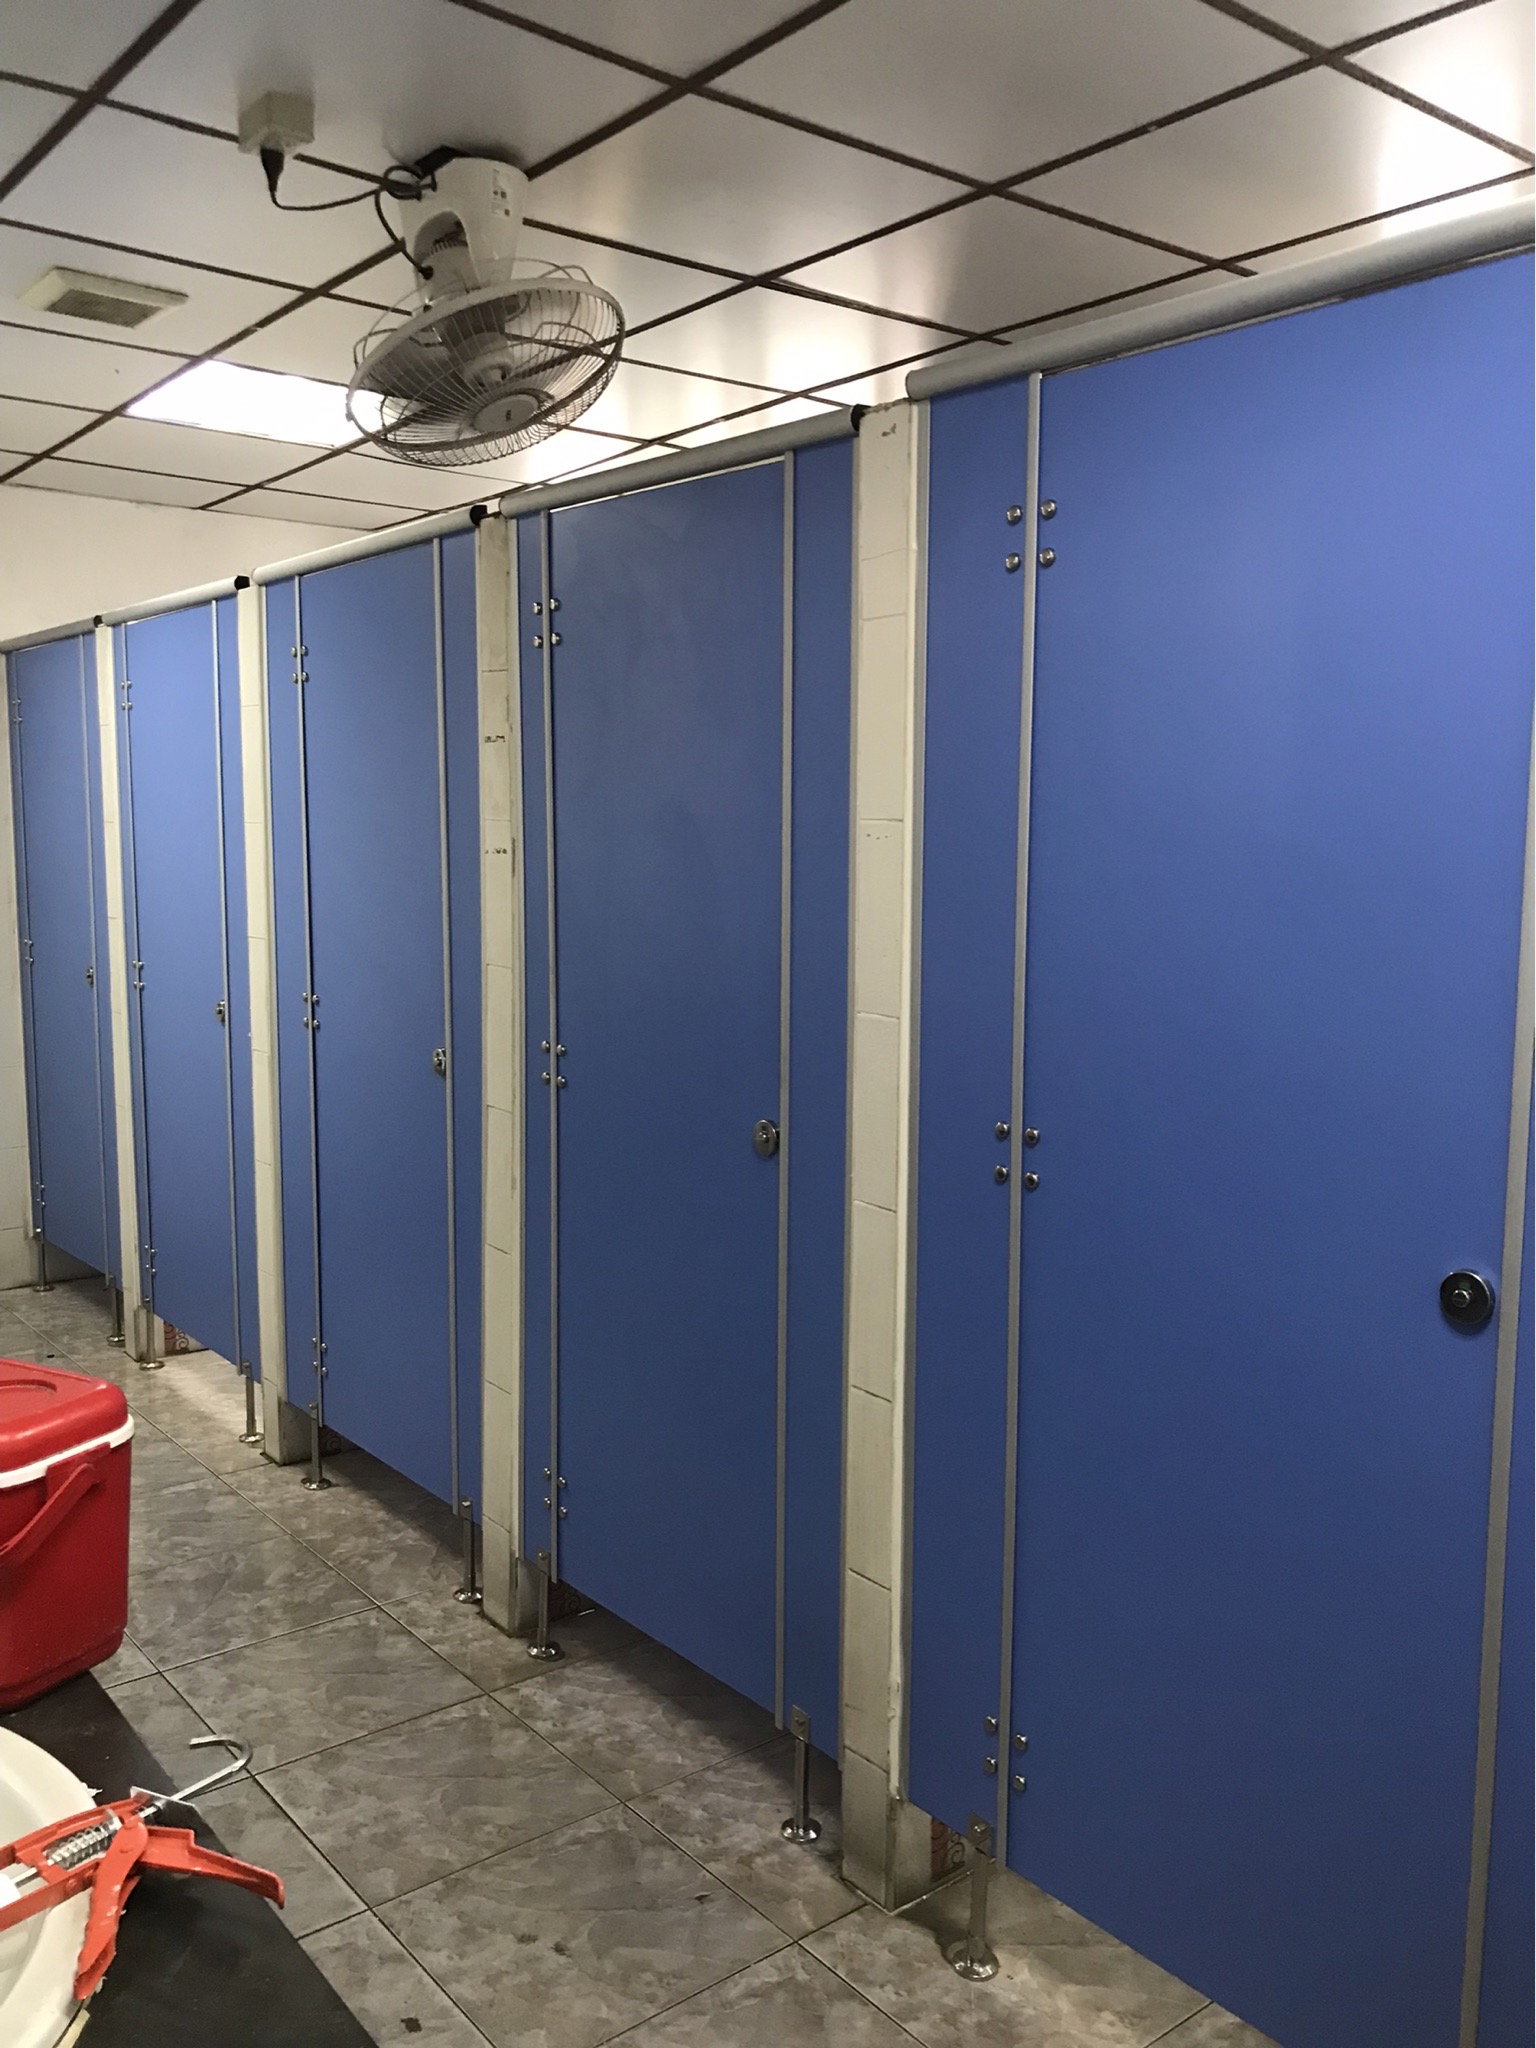 ติดตั้งผนังกั้นห้องน้ำ บริษัท ทานาเบะ (ประเทศไทย) จำกัด สีฟ้ากันน้ำ จังหวัดปราจีนบุรี